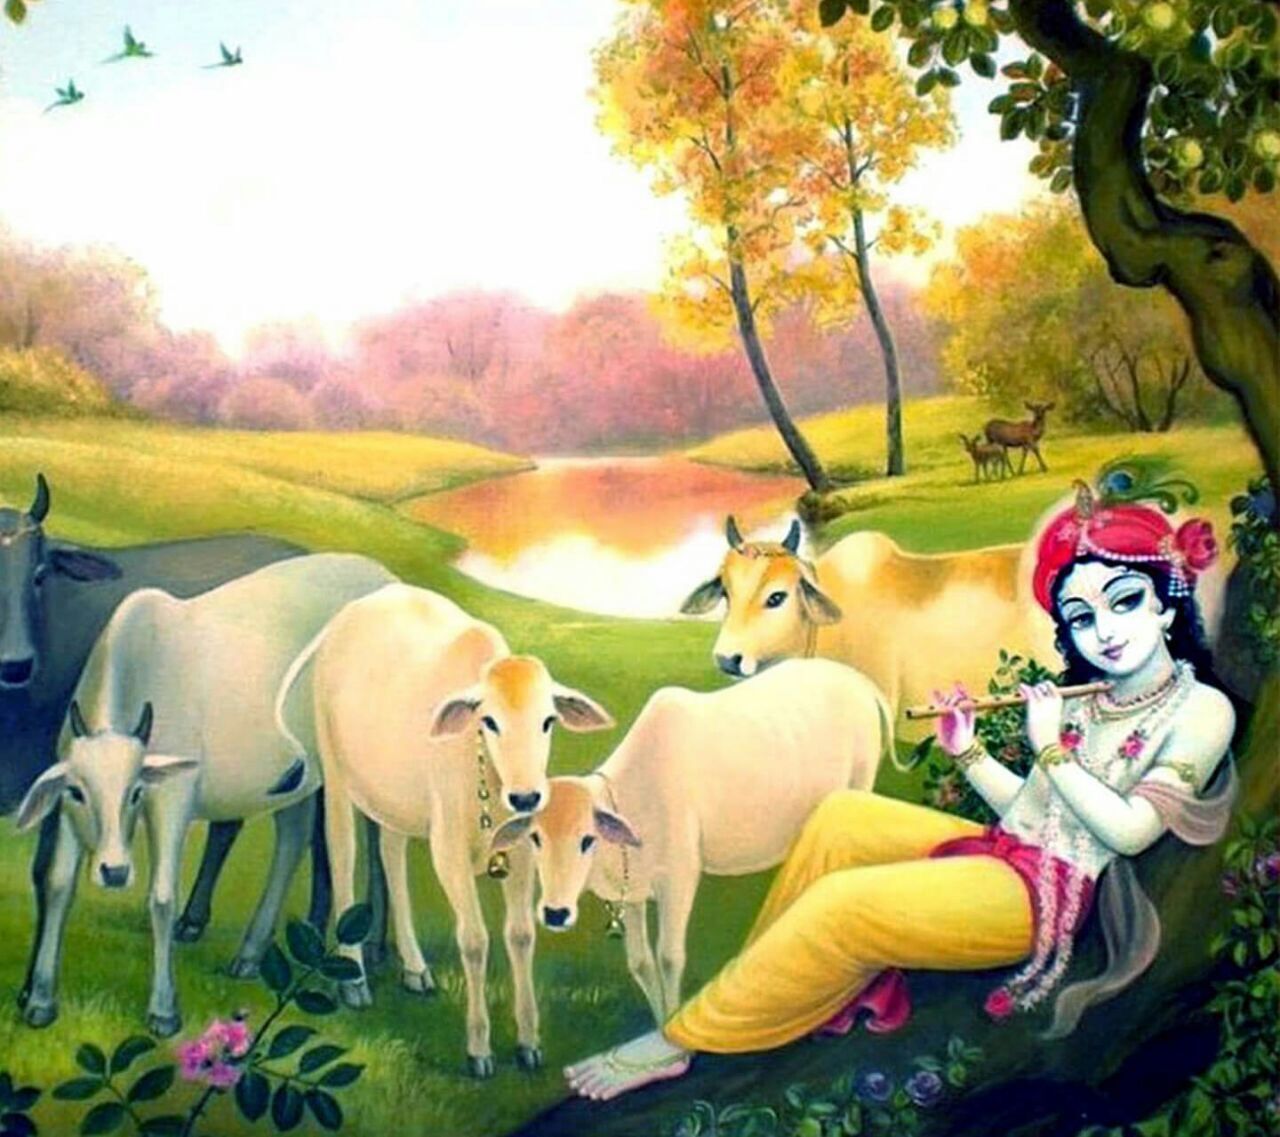 Murali manohara. Krishna flute, Krishna radha painting, Lord krishna